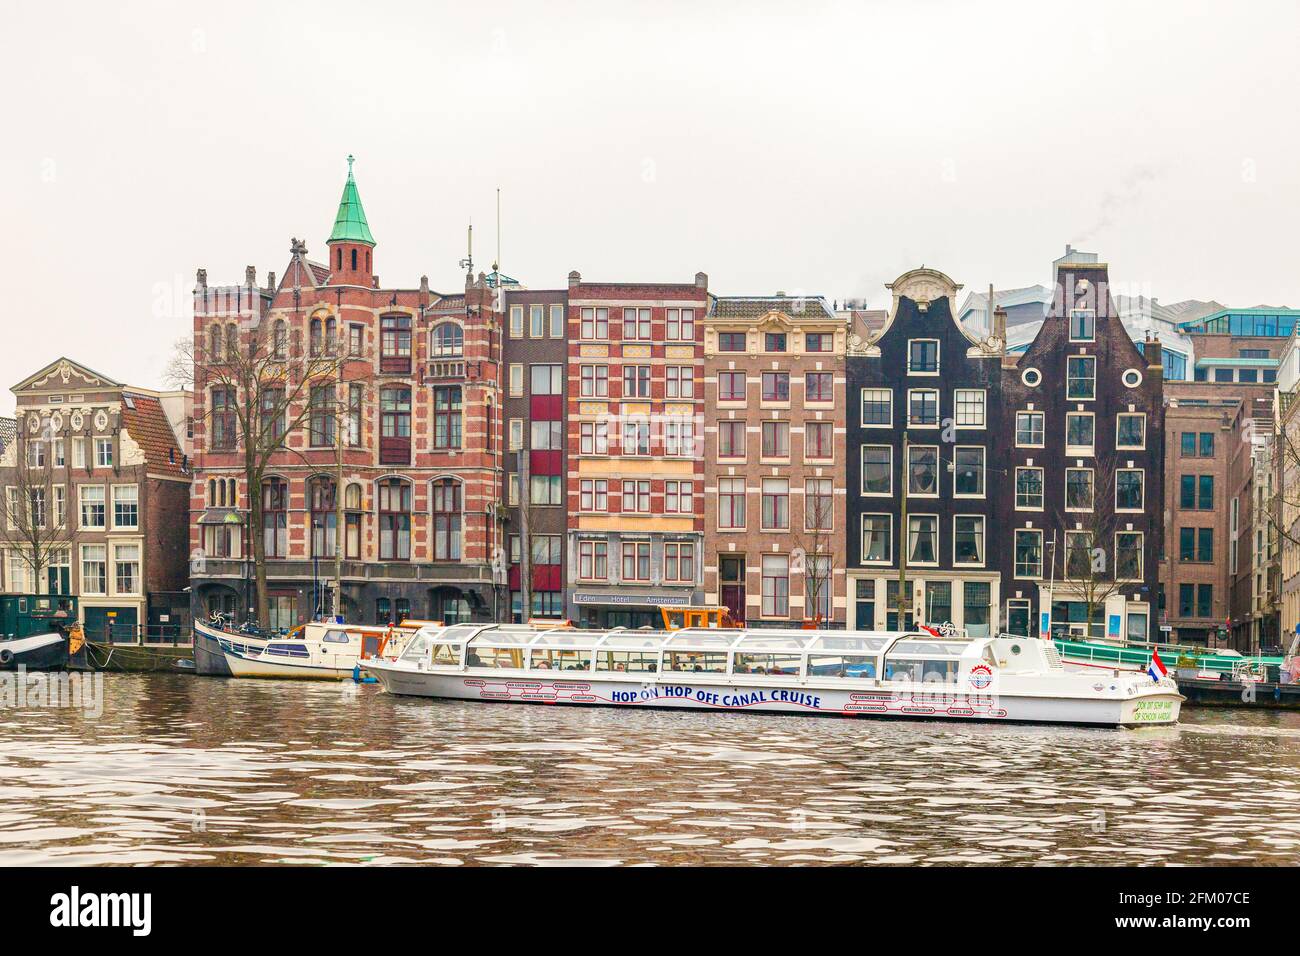 Bateau de croisière le long du canal avec des maisons colorées sur le bord de la rivière, Amsterdam, la Hollande du Nord, les pays-Bas Banque D'Images